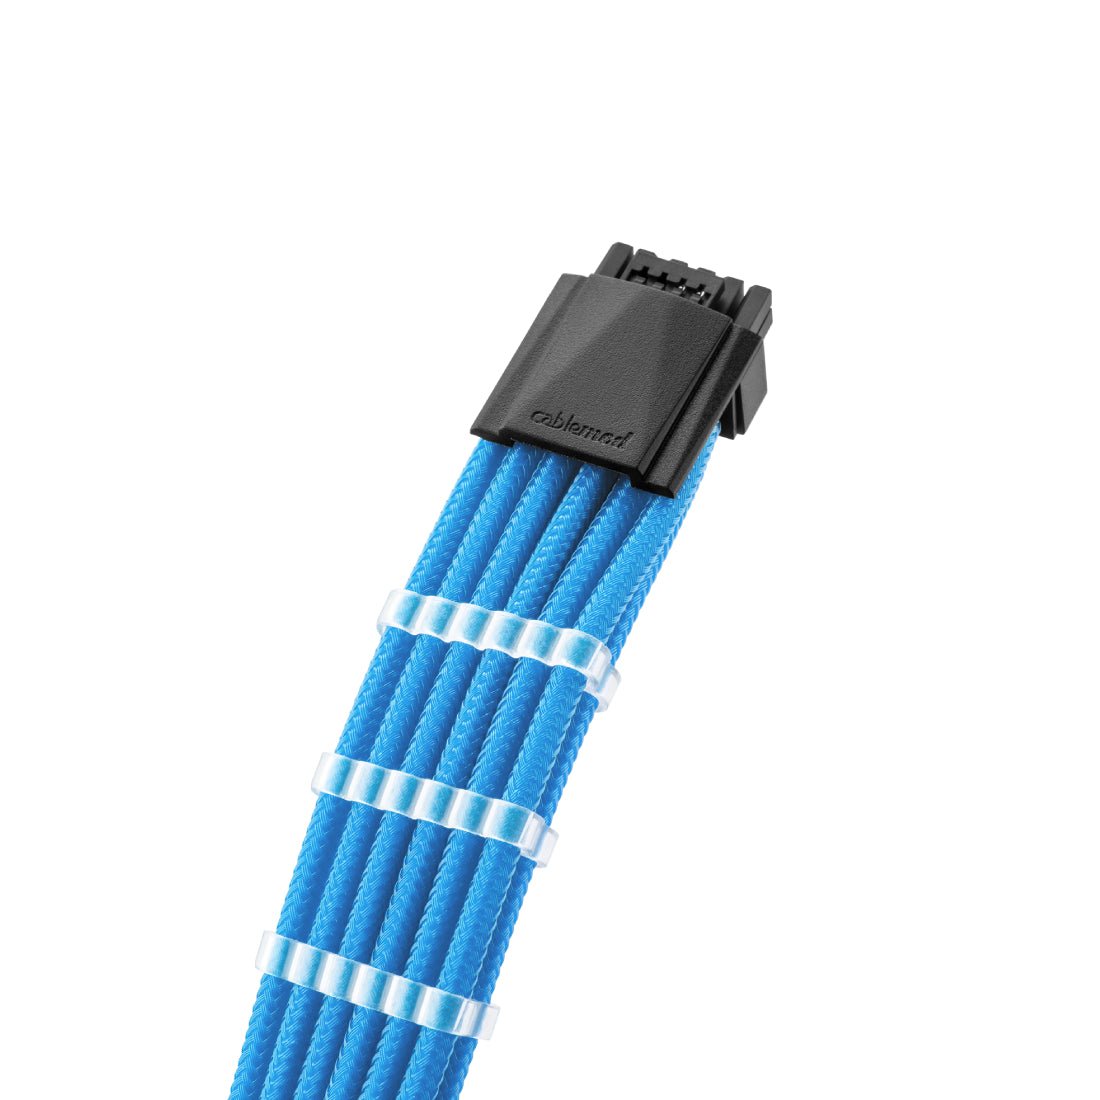 CableMod Pro ModMesh 12VHPWR PCI-e Cable Extension (Light Blue, 16-pin to Triple 8-pin, 45cm) - كابل - Store 974 | ستور ٩٧٤